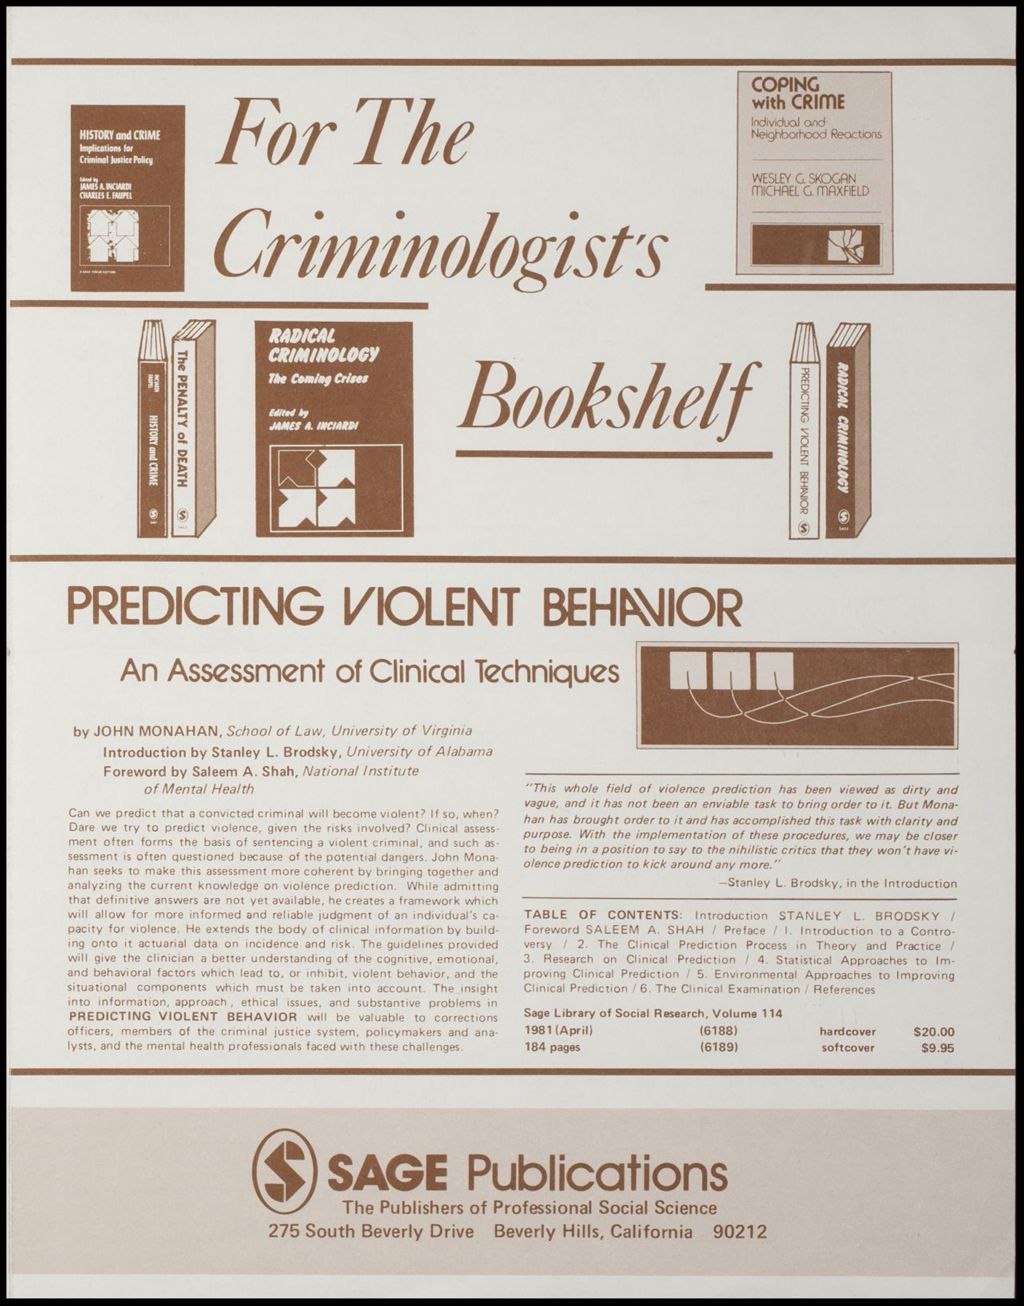 Miniature of Criminal Justice, 1980 (Folder III-1956)